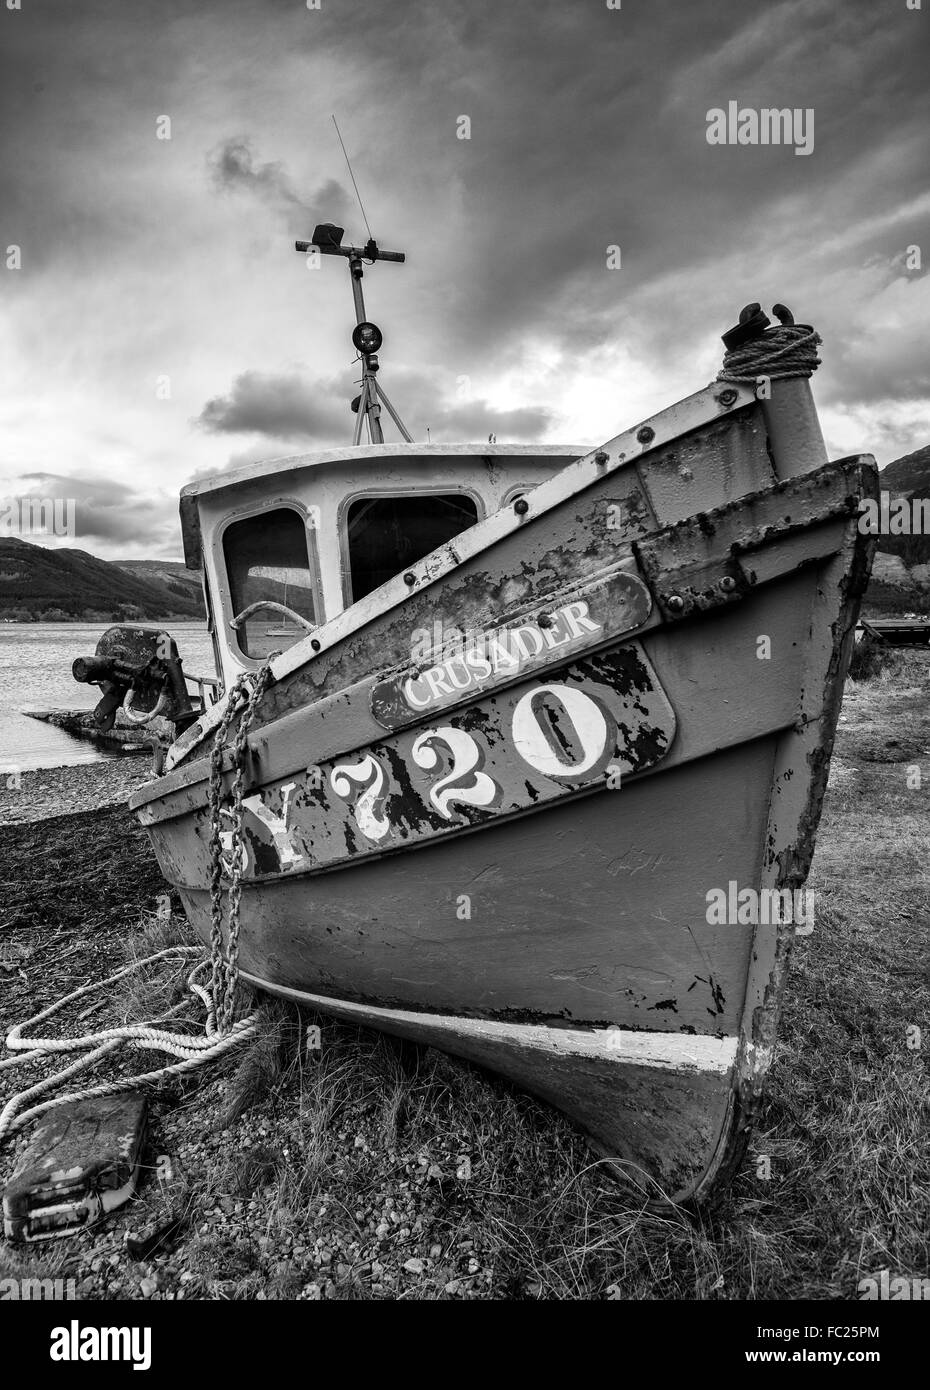 Un bateau sur la plage à Invershiel, sur les rives du Loch Duich dans les Highlands écossais, UK Banque D'Images